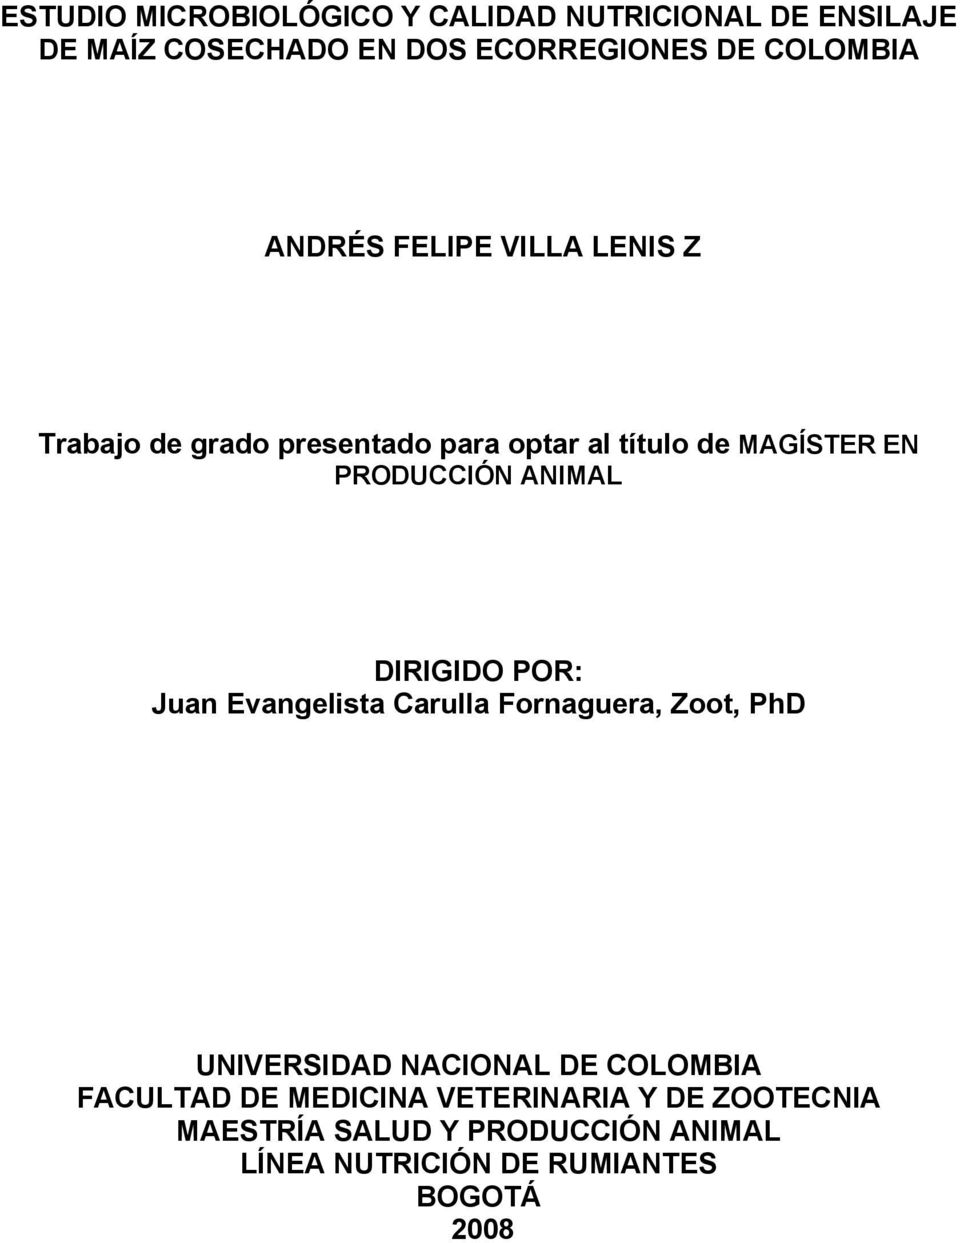 ANIMAL DIRIGIDO POR: Juan Evangelista Carulla Fornaguera, Zoot, PhD UNIVERSIDAD NACIONAL DE COLOMBIA